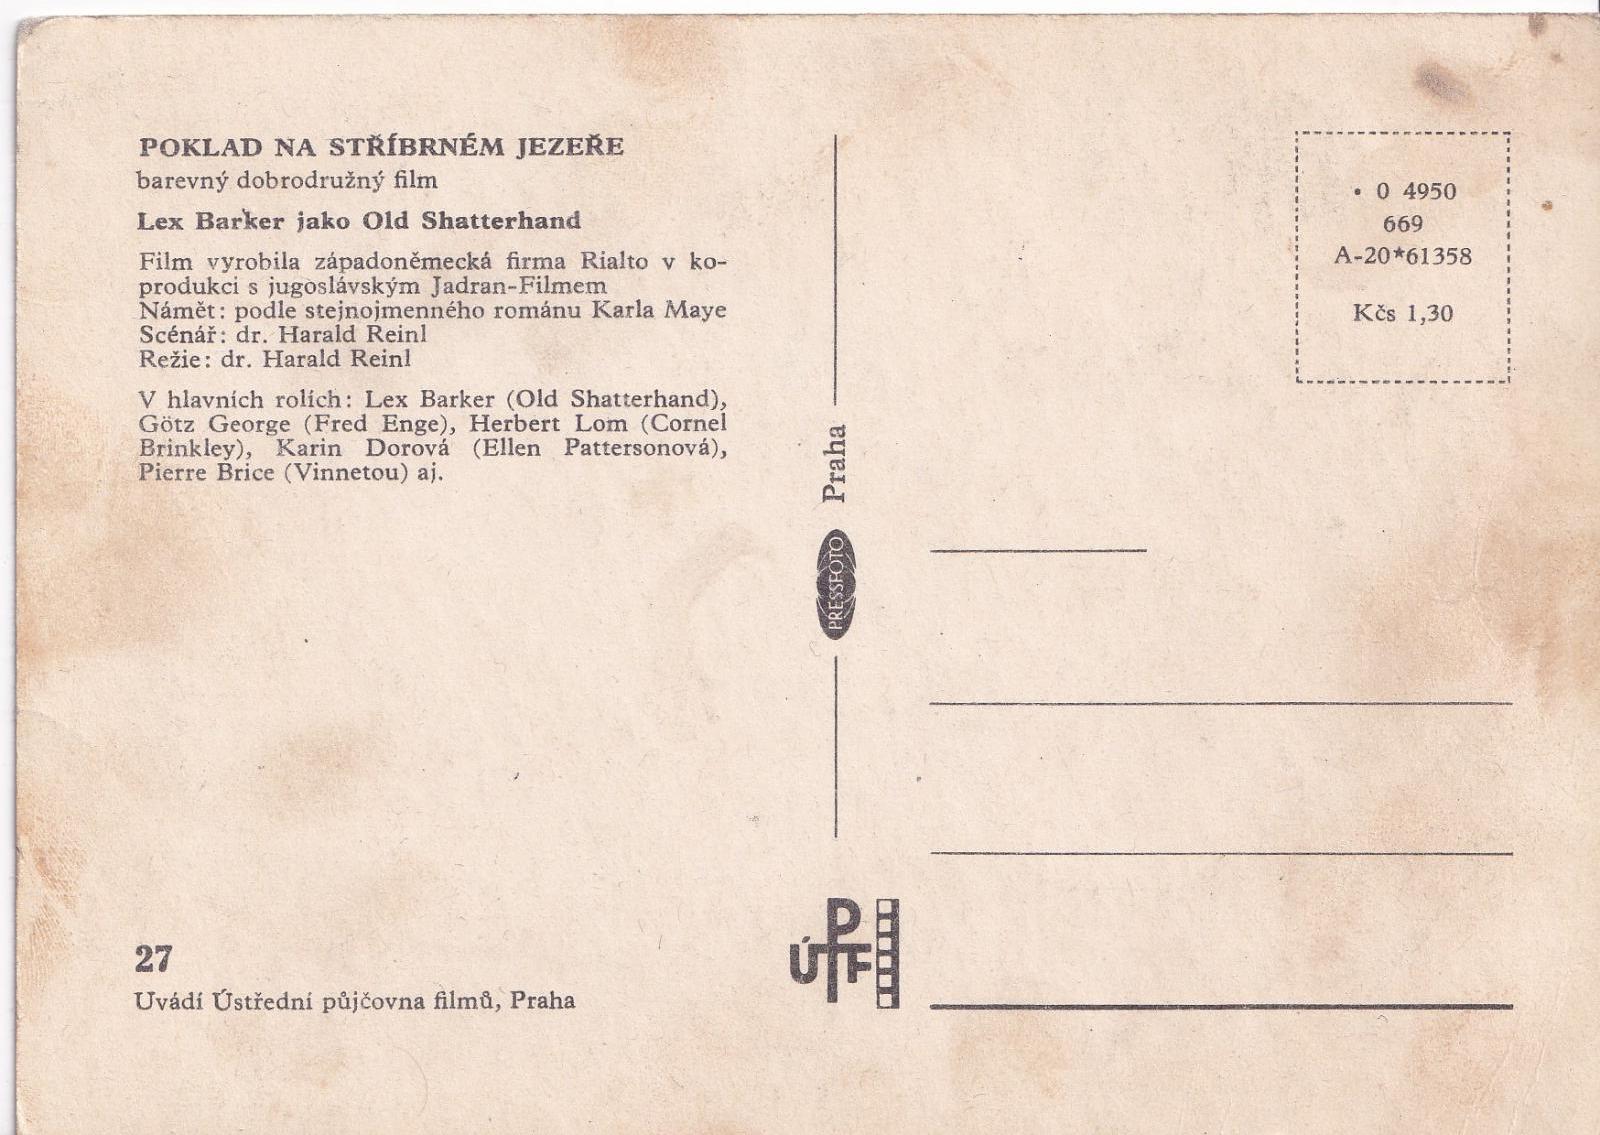 Poklad na stříbrném jezeře-ÚPF-Vydavatel-PRESSFOTO PRAHA 1965-VF - Pohlednice